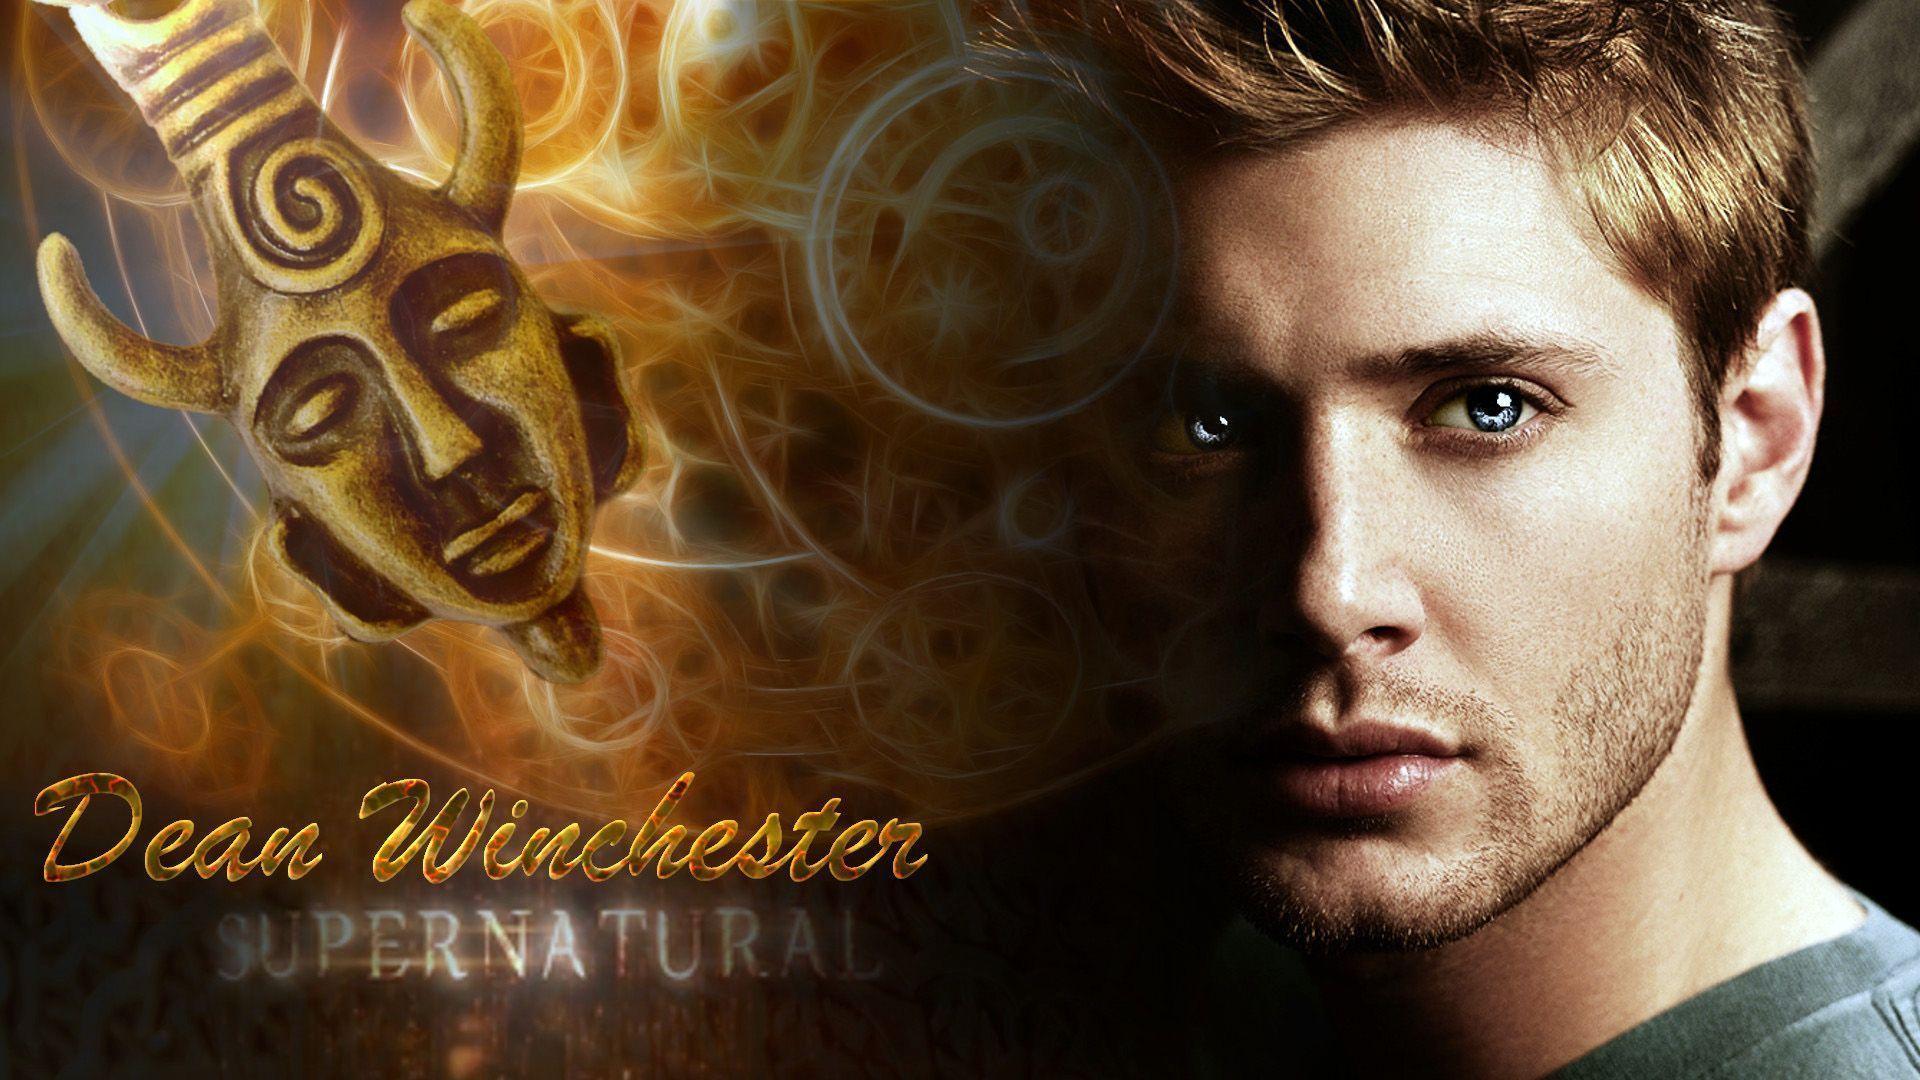 Dean Winchester Supernatural wallpaper